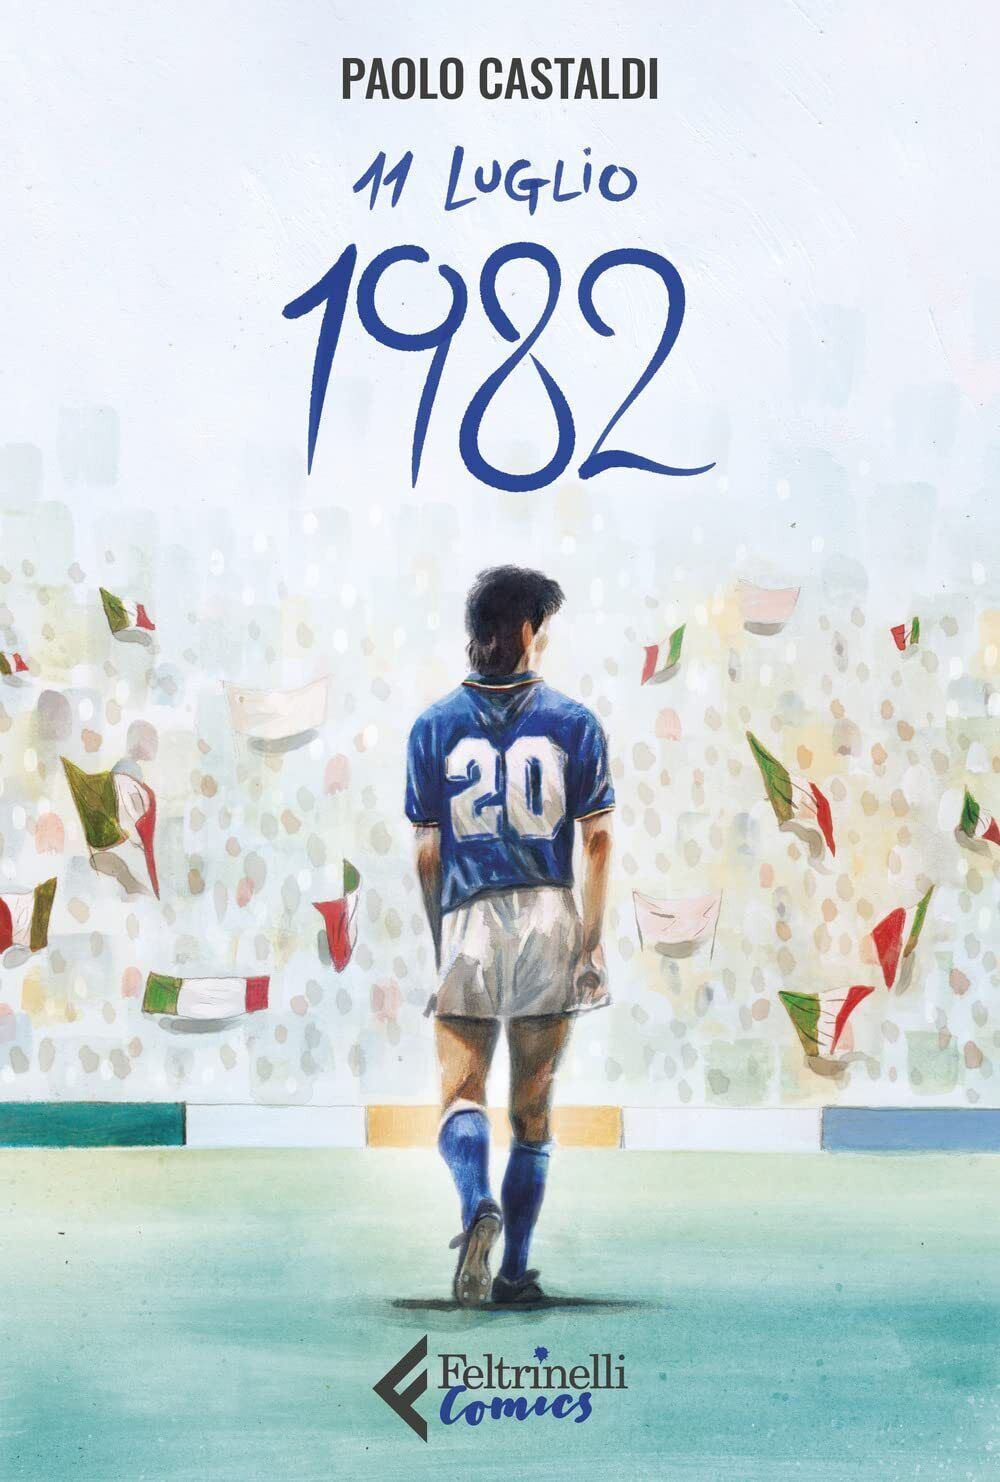 11 luglio 1982 - Paolo Castaldi - Feltrinelli, 2022